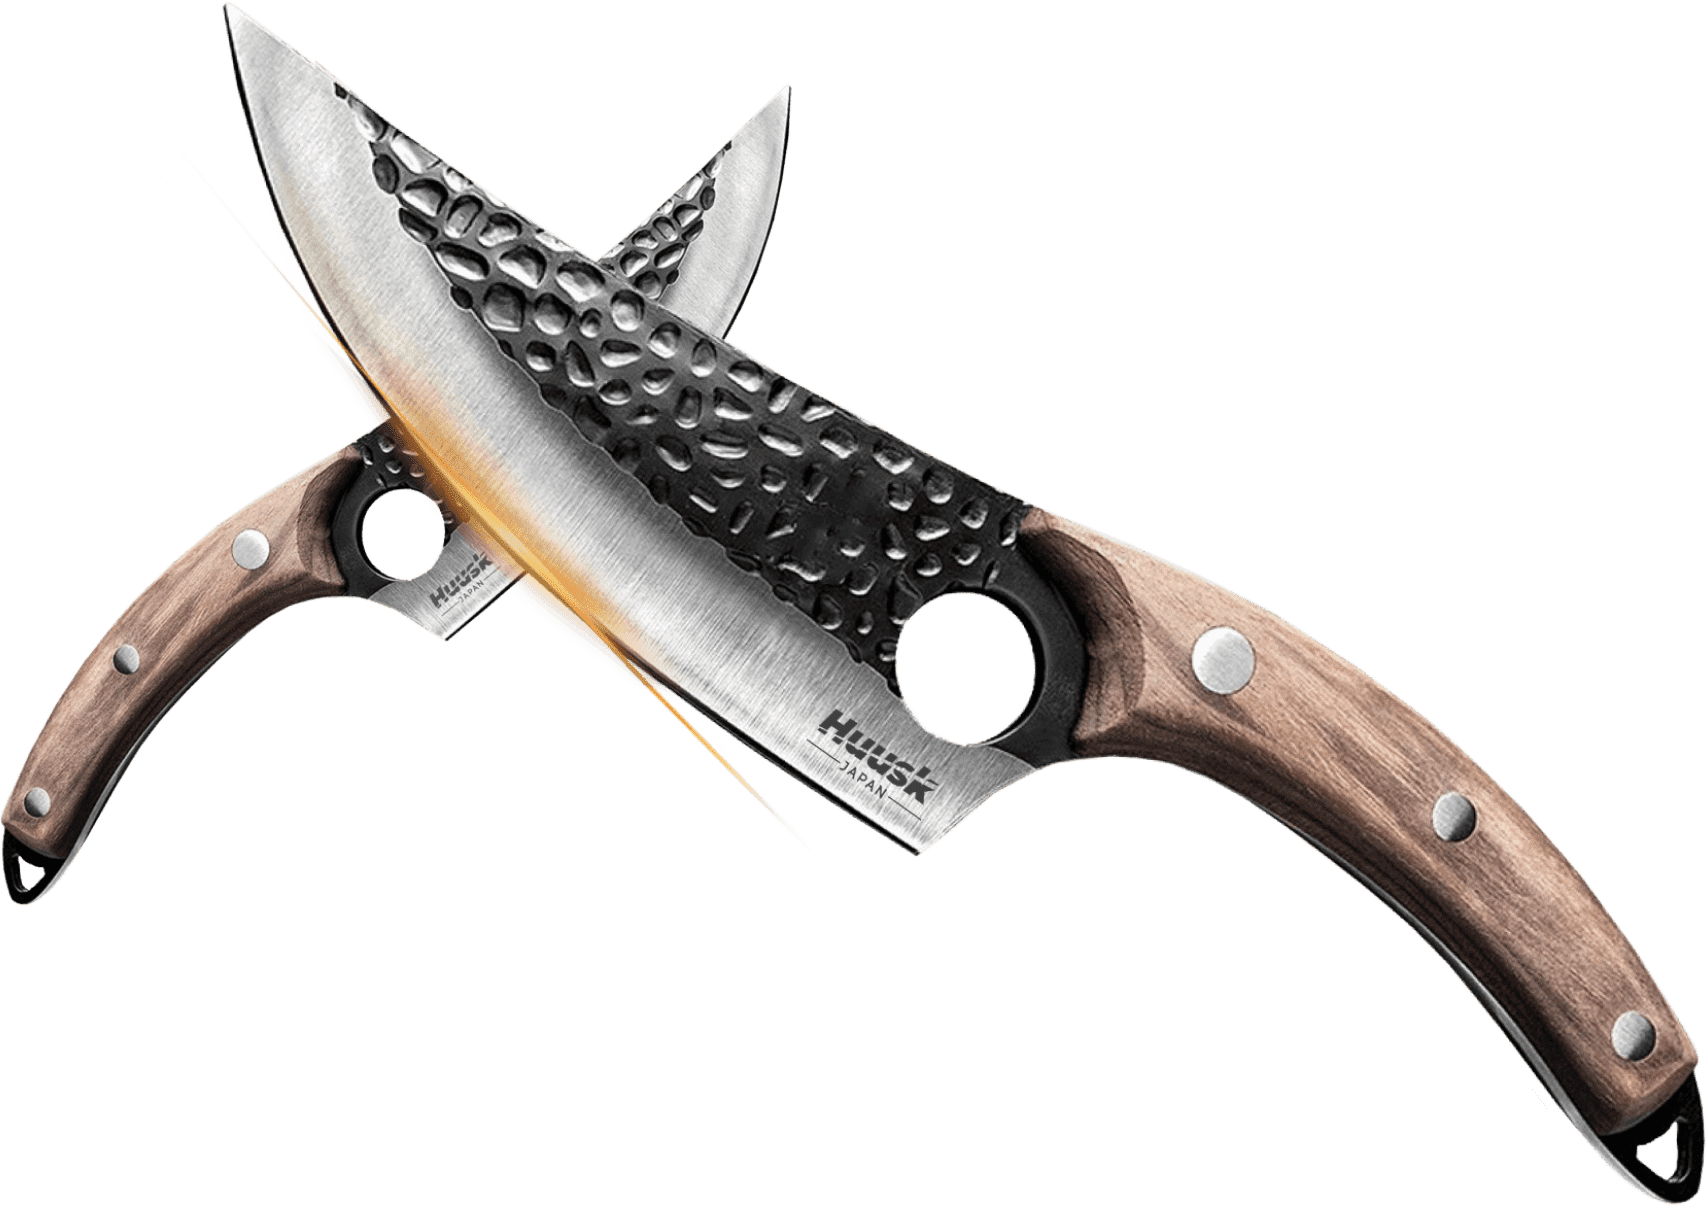 Huusk knife